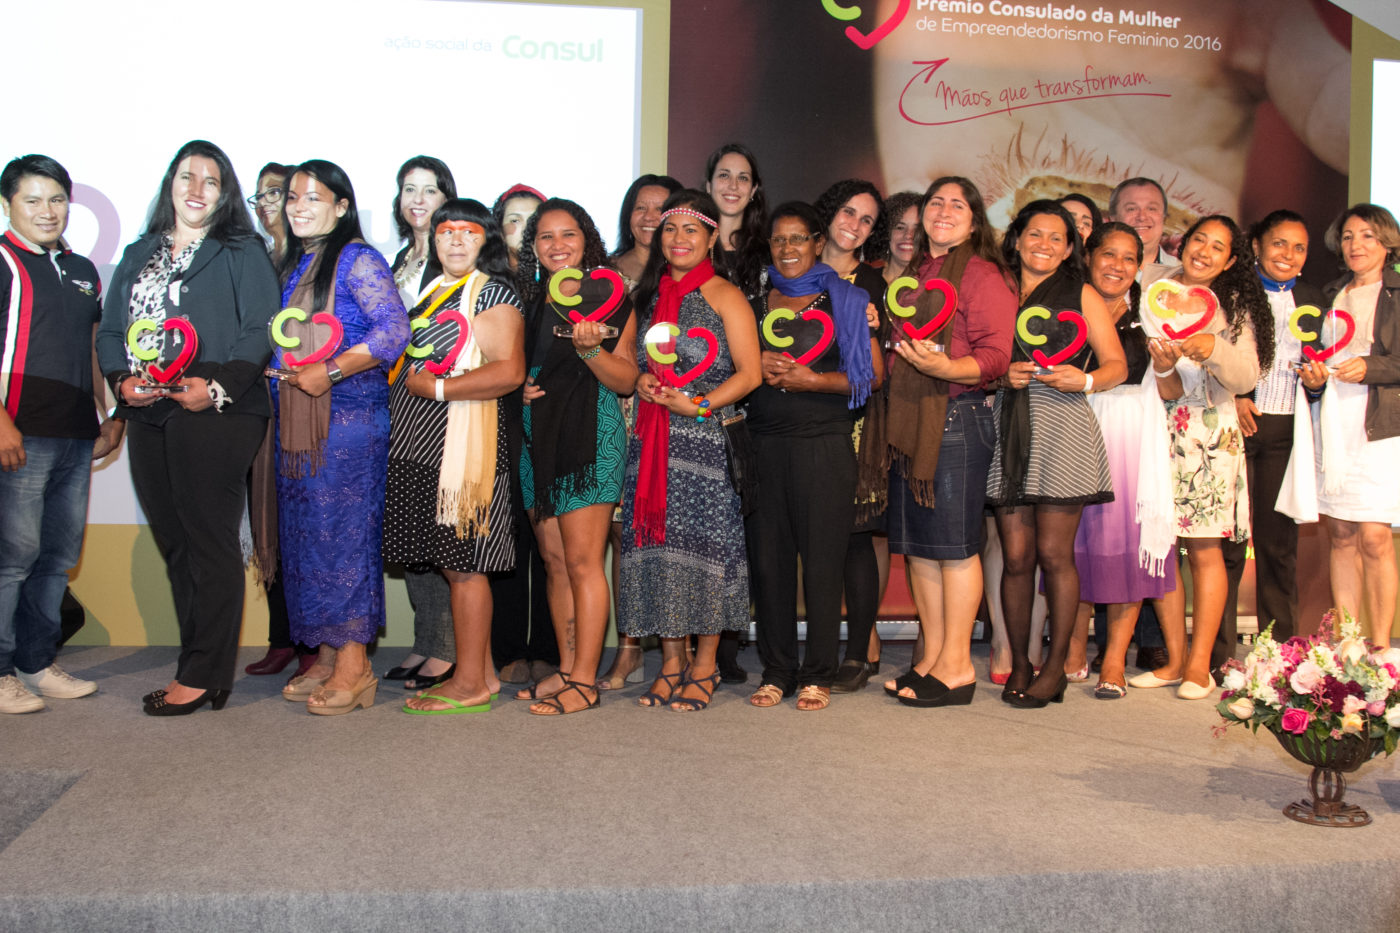 projetos-vencedores_premio-consulado-da-mulher-2016